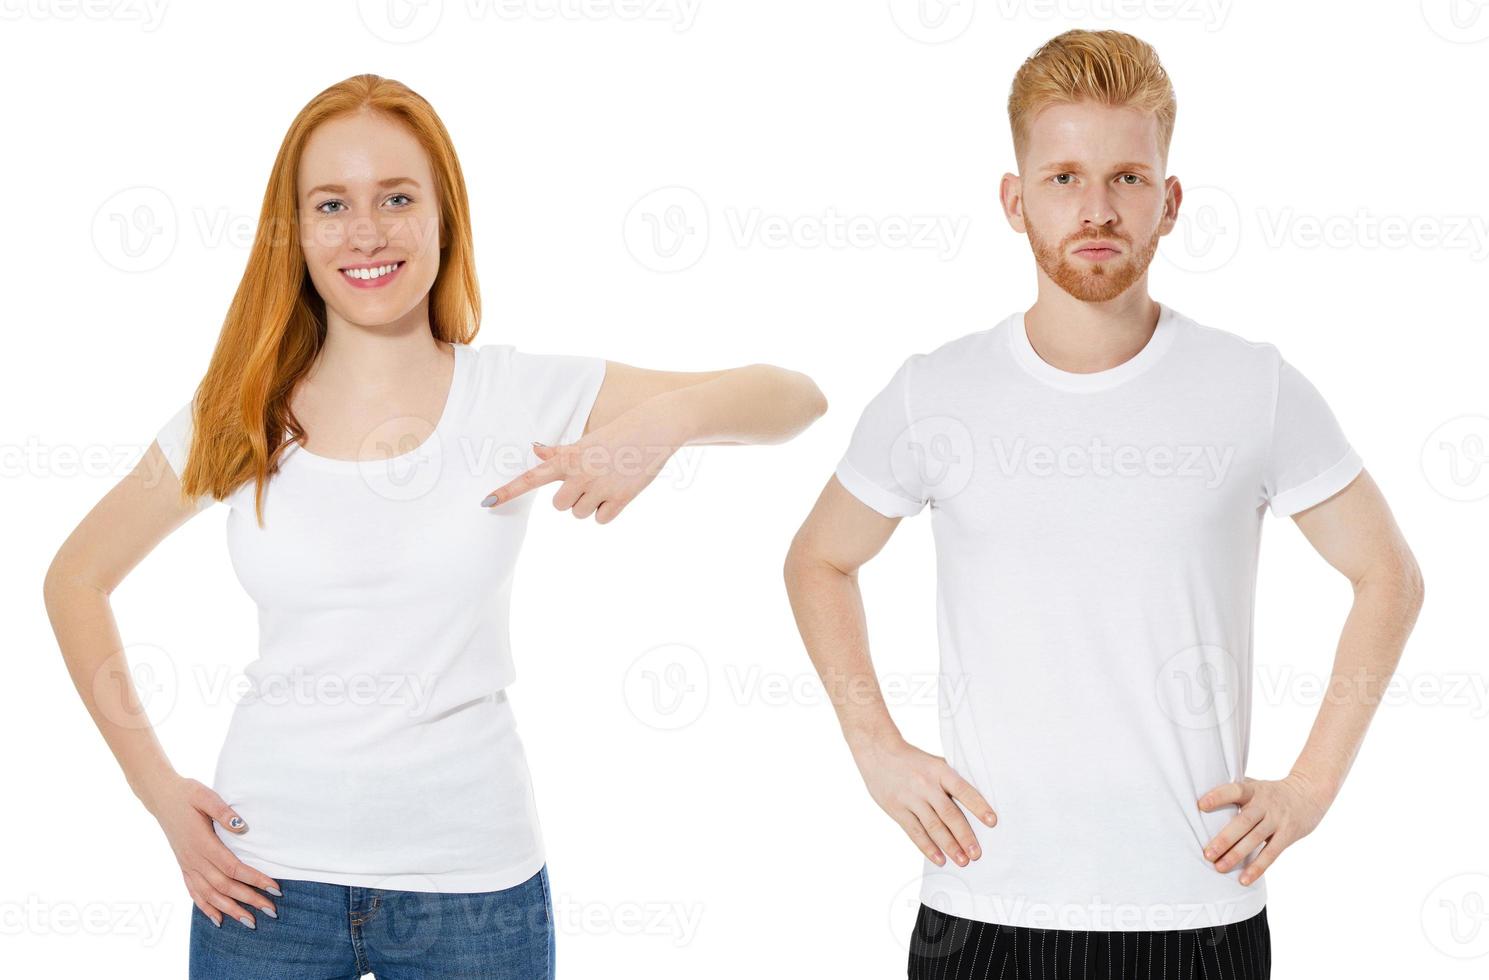 Deux Modèles Hippie Homme Et Femme Portant Blanc T-shirt Gris, Jeans Et  Lunettes De Soleil Posant Contre Le Mur De Béton Rugueux Dans La Rue De La  Ville, Mockup Tshirt Avant Pour